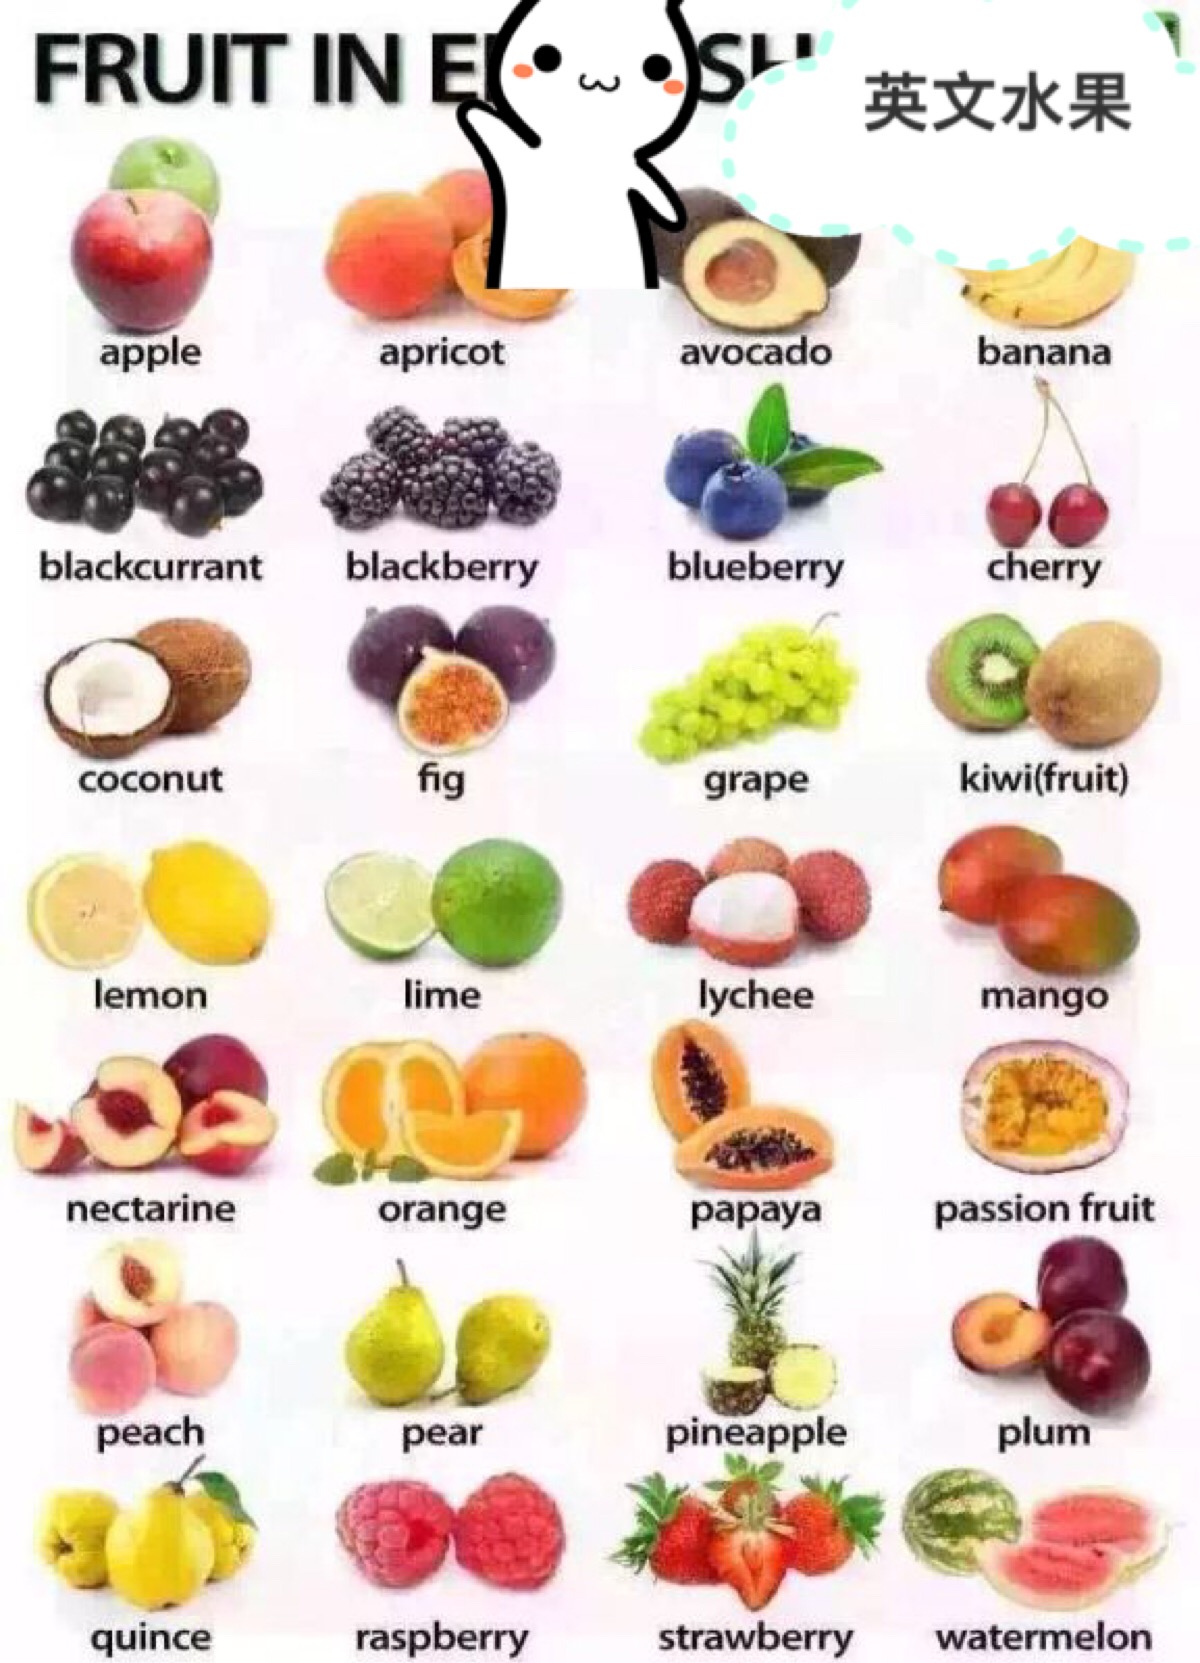 学英语的亲们,看你们认识哪几个水果?